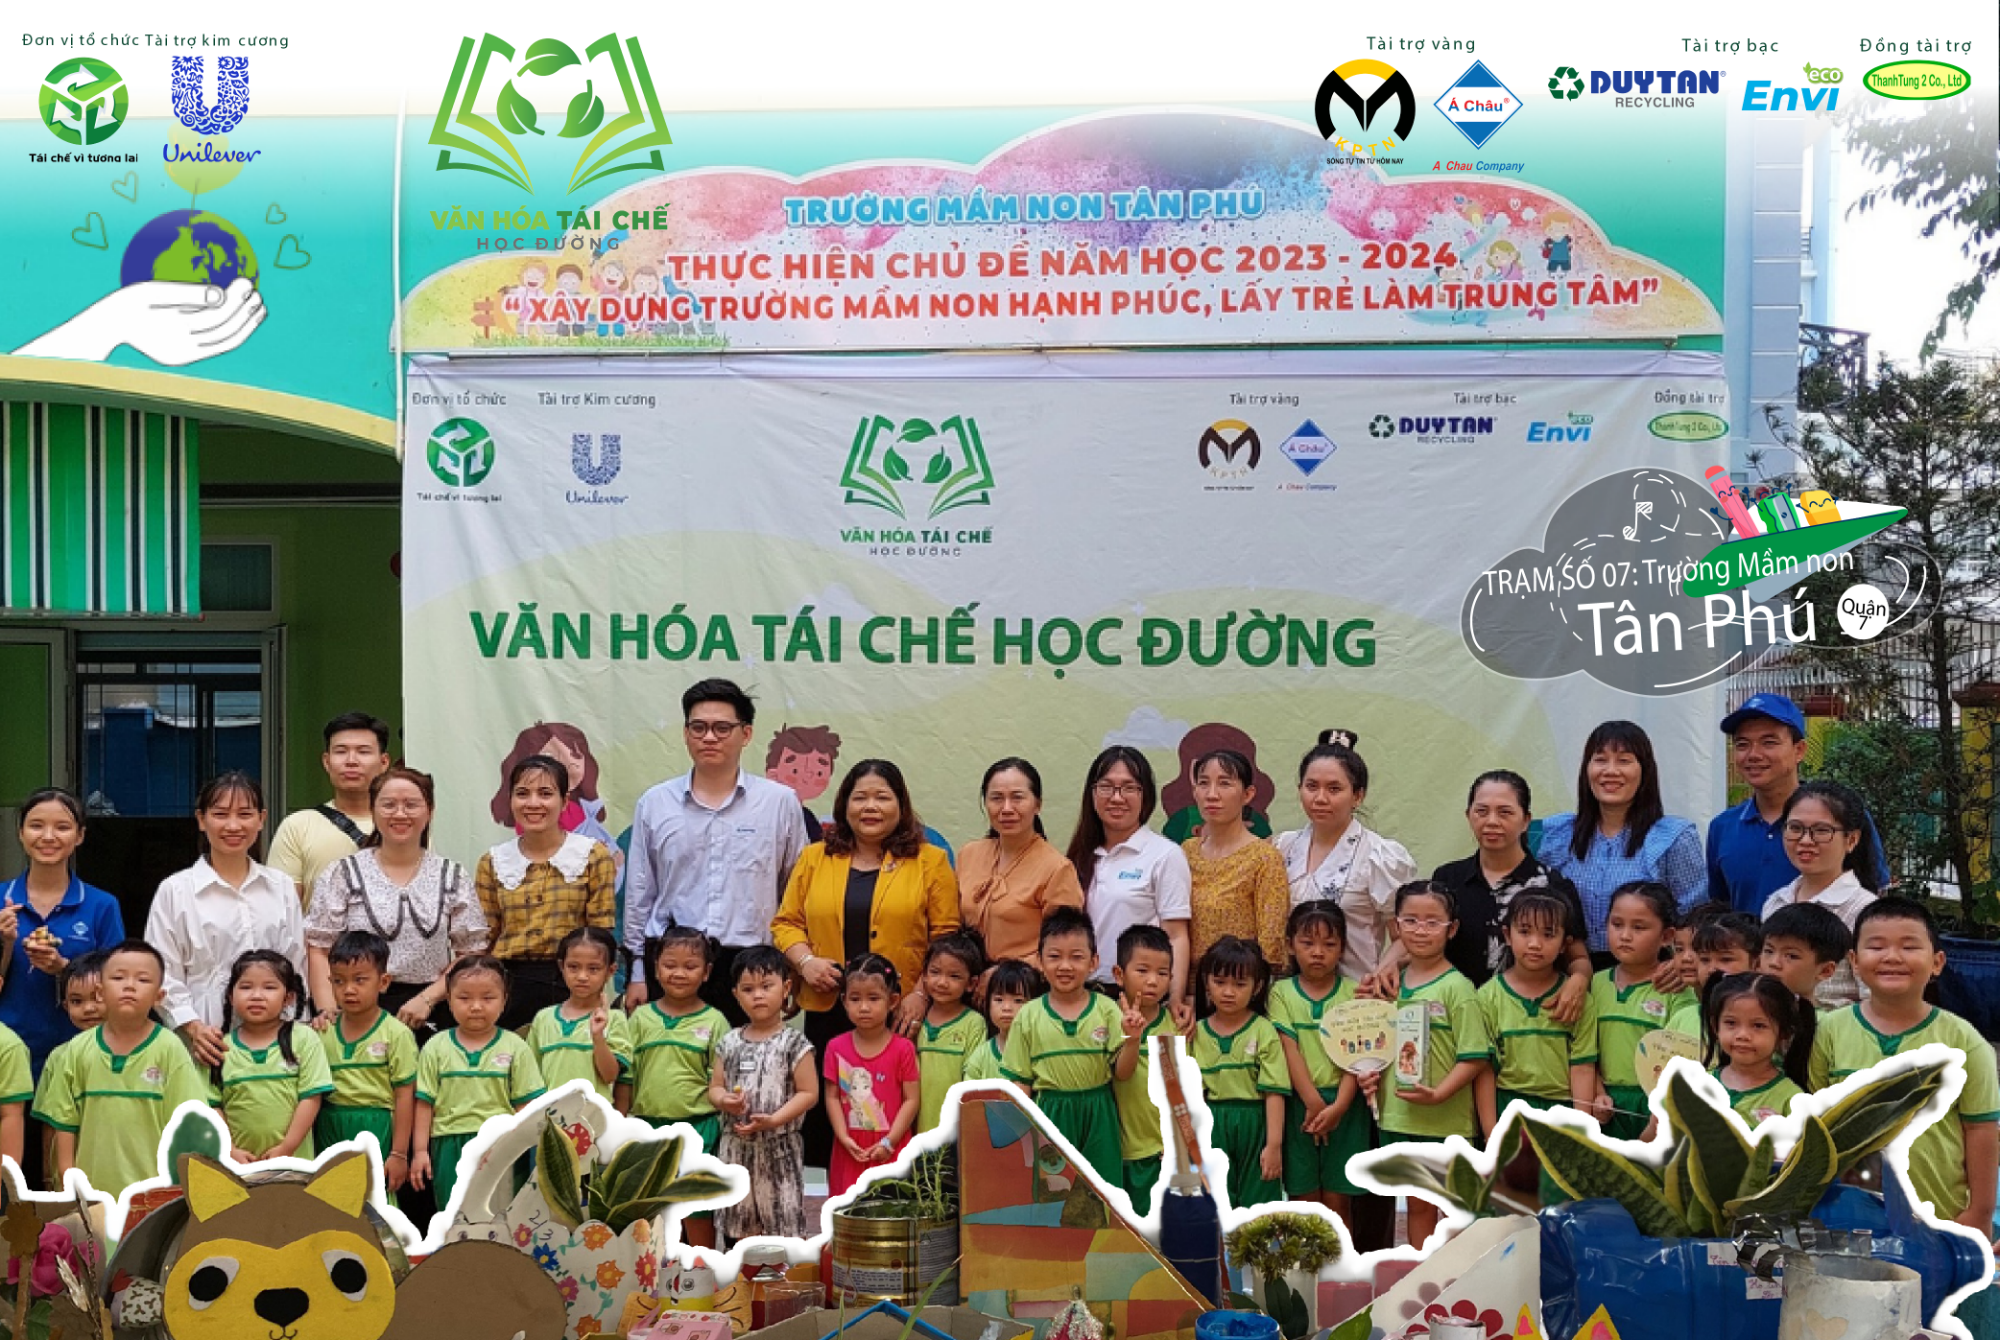 Tái chế học đường - Trạm 07: Hạnh phúc từ những điều nhỏ bé nhất cùng các Mầm non Tân Phú, Quận 7.